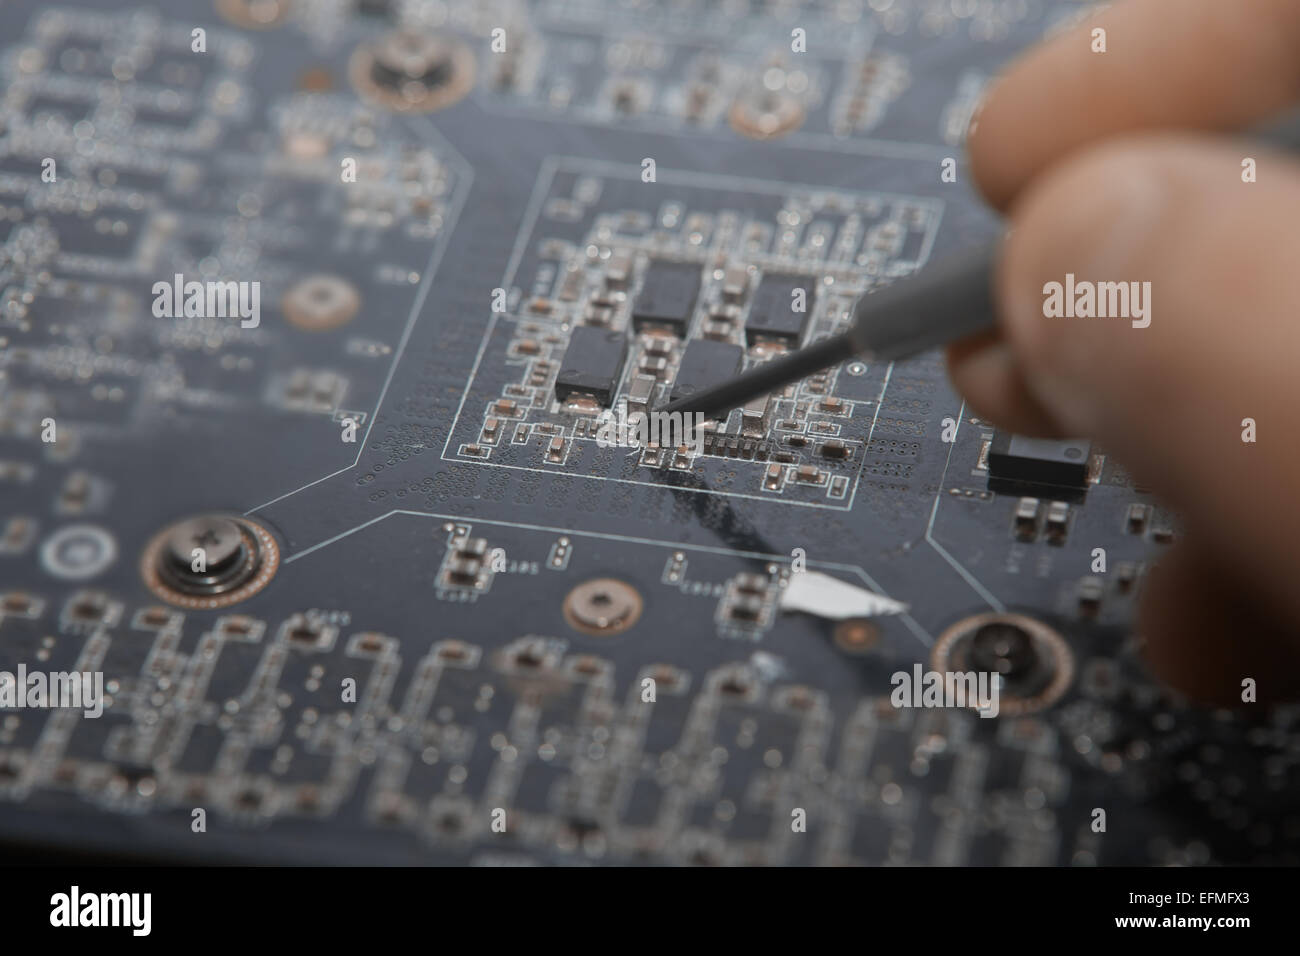 Los dedos humanos hacer la reparación de motherboard. La foto Foto de stock